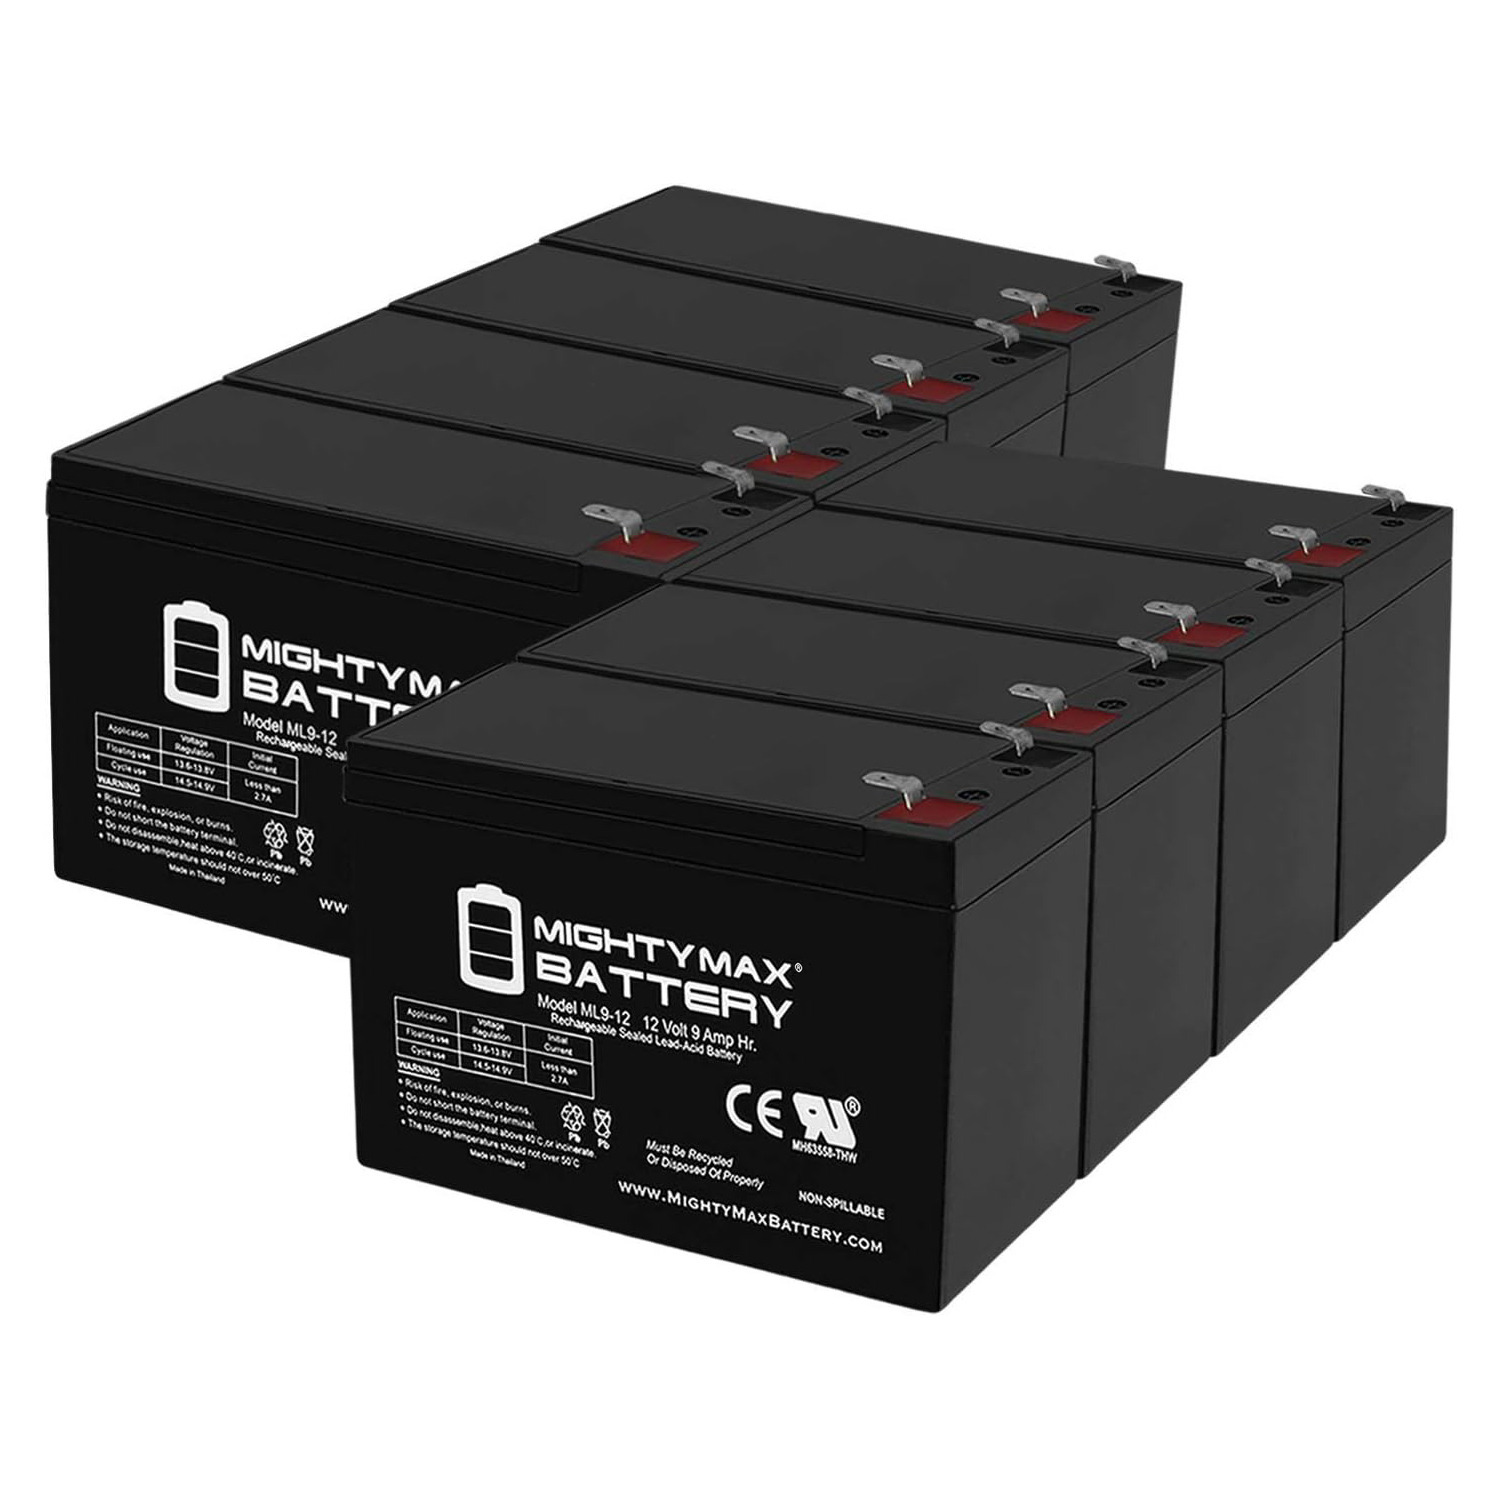 Altronix AL300ULPD8 12V, 9Ah Lead Acid Battery - 8 Pack